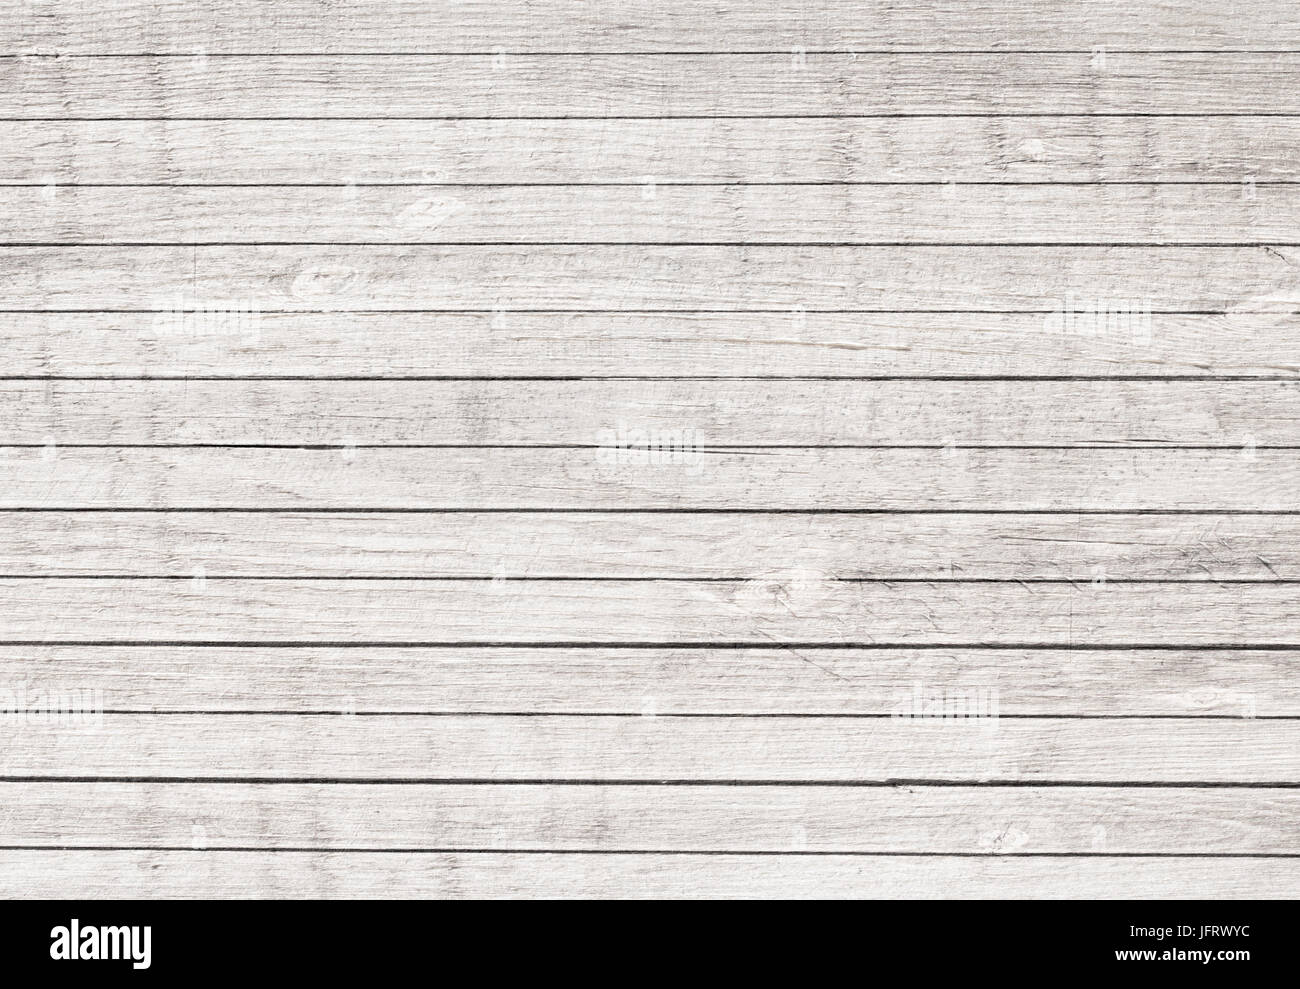 La texture en bois avec planches horizontales marbre, tableau, à la surface du mur. Banque D'Images